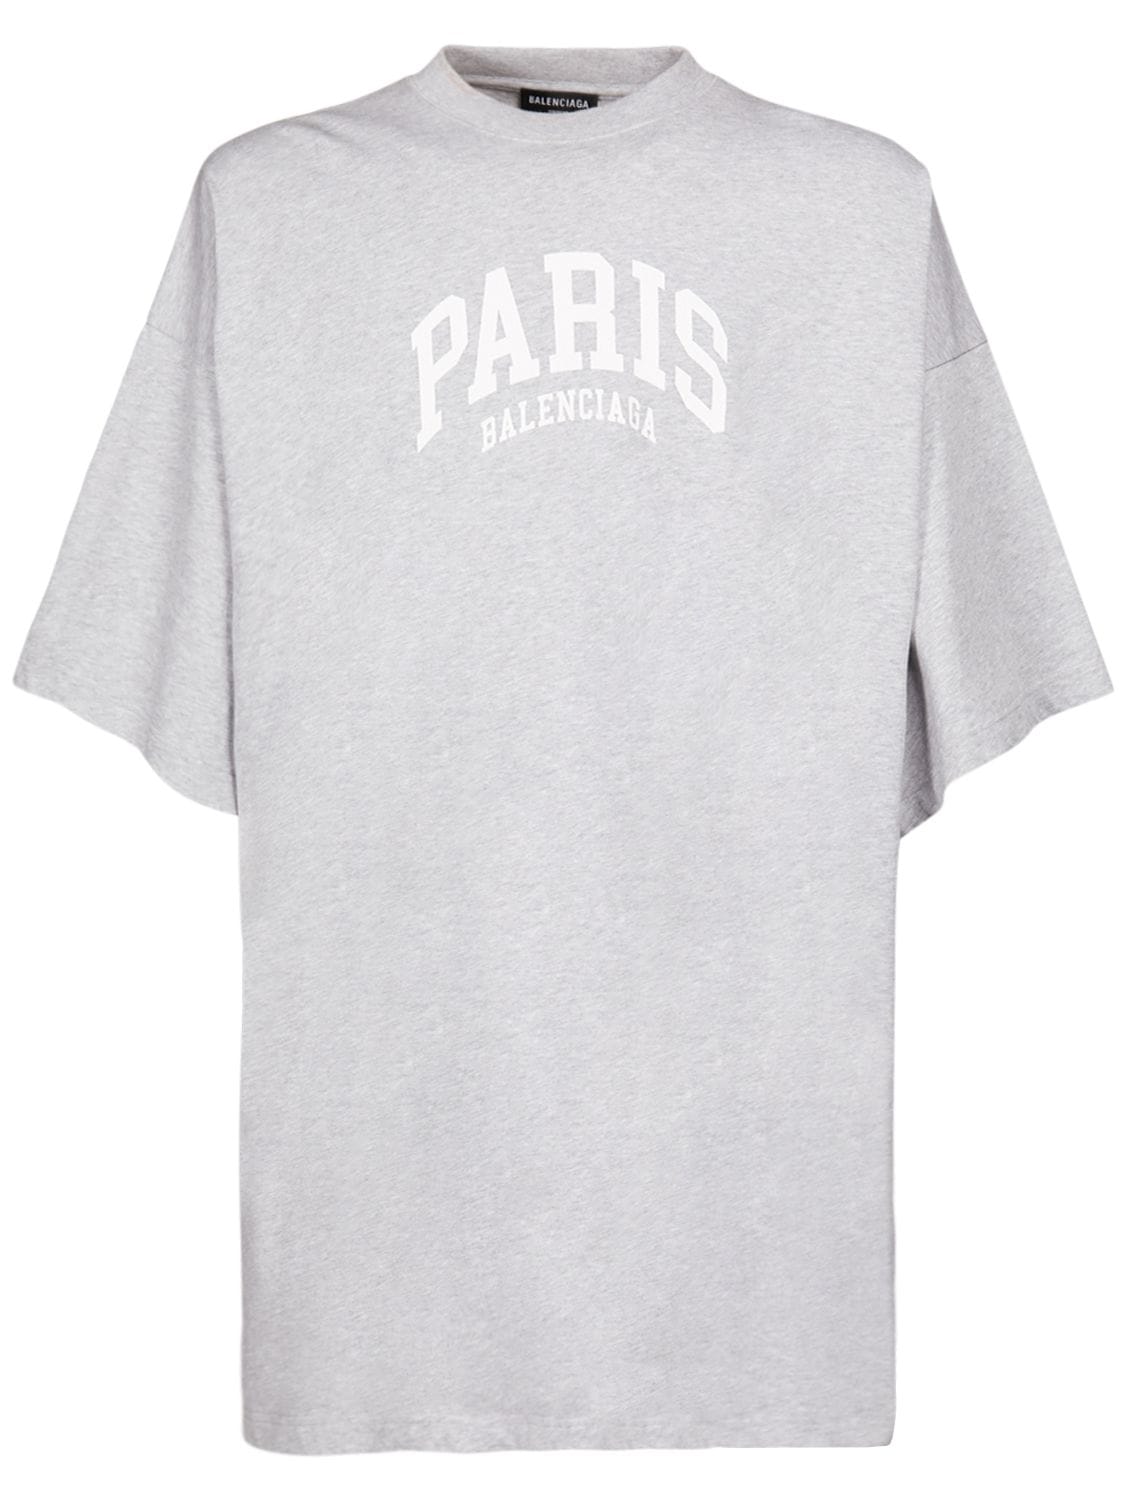 Balenciaga Over Paris Cotton T-shirt In Heather Grey